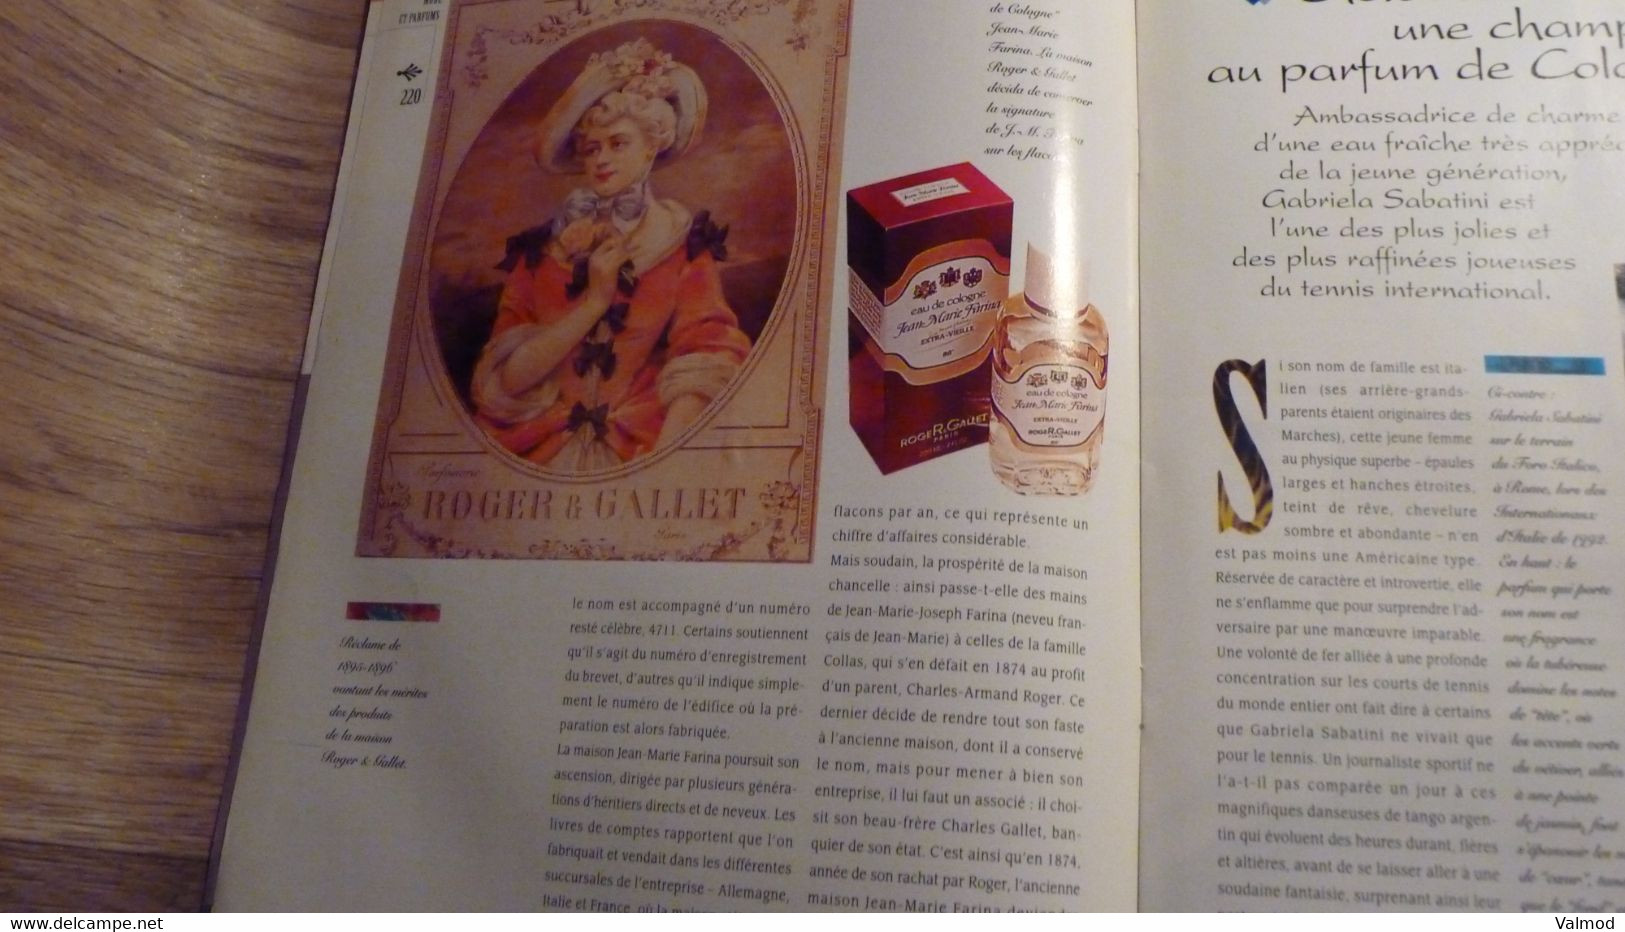 Magazine "Parfums De Rêve" N° 19 -  Azzaro - "Oh La La" - Editions Atlas - Magazines